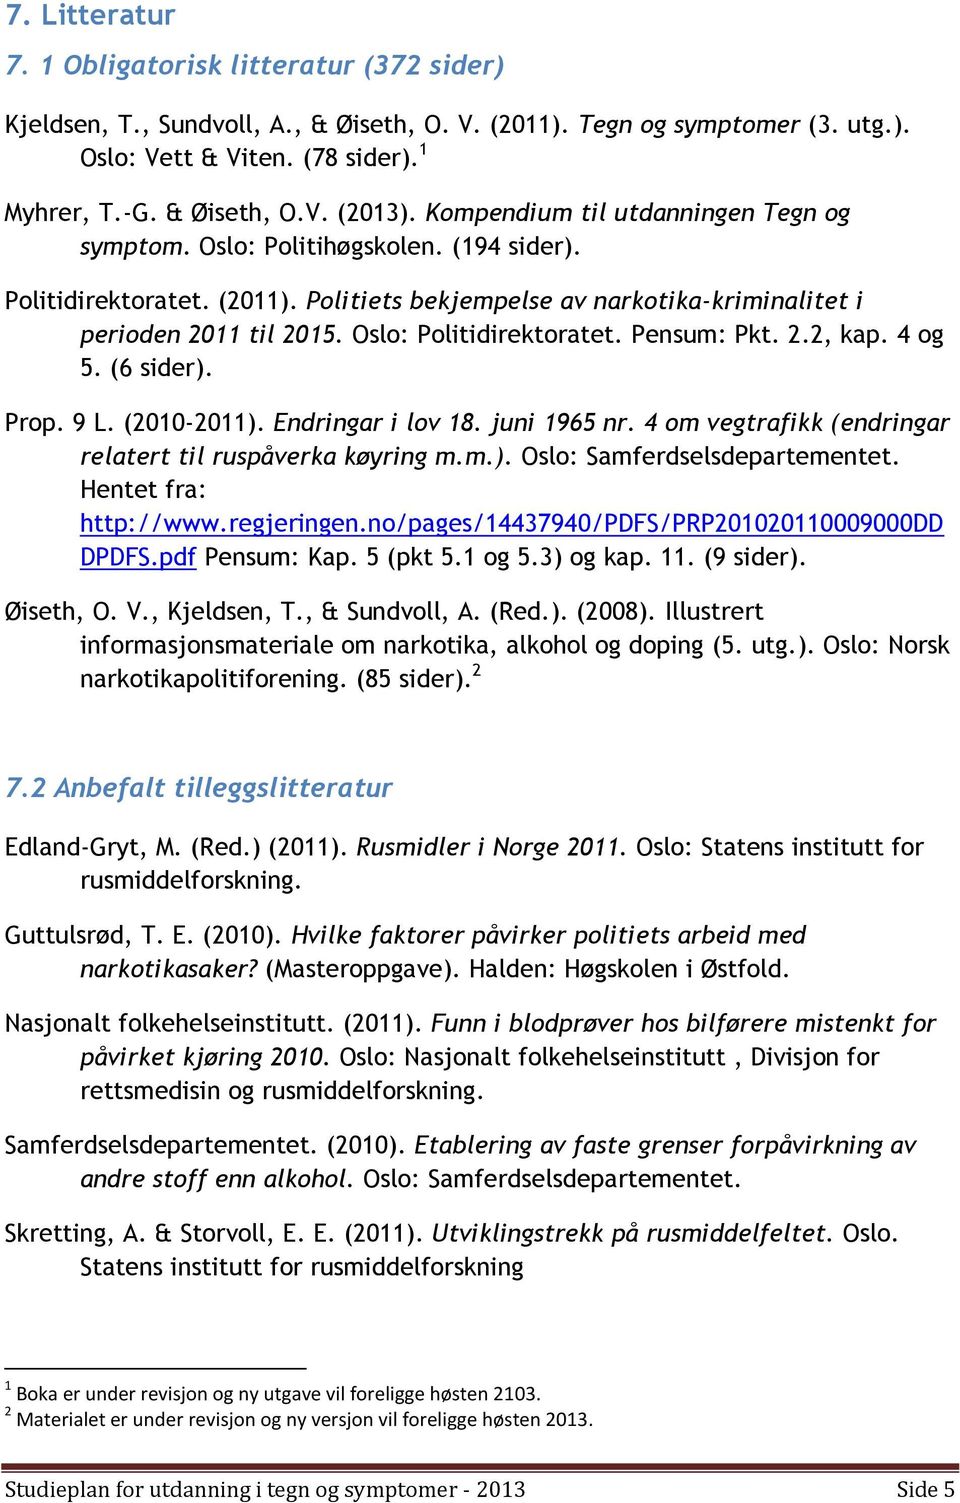 Oslo: Politidirektoratet. Pensum: Pkt. 2.2, kap. 4 og 5. (6 sider). Prop. 9 L. (2010-2011). Endringar i lov 18. juni 1965 nr. 4 om vegtrafikk (endringar relatert til ruspåverka køyring m.m.). Oslo: Samferdselsdepartementet.